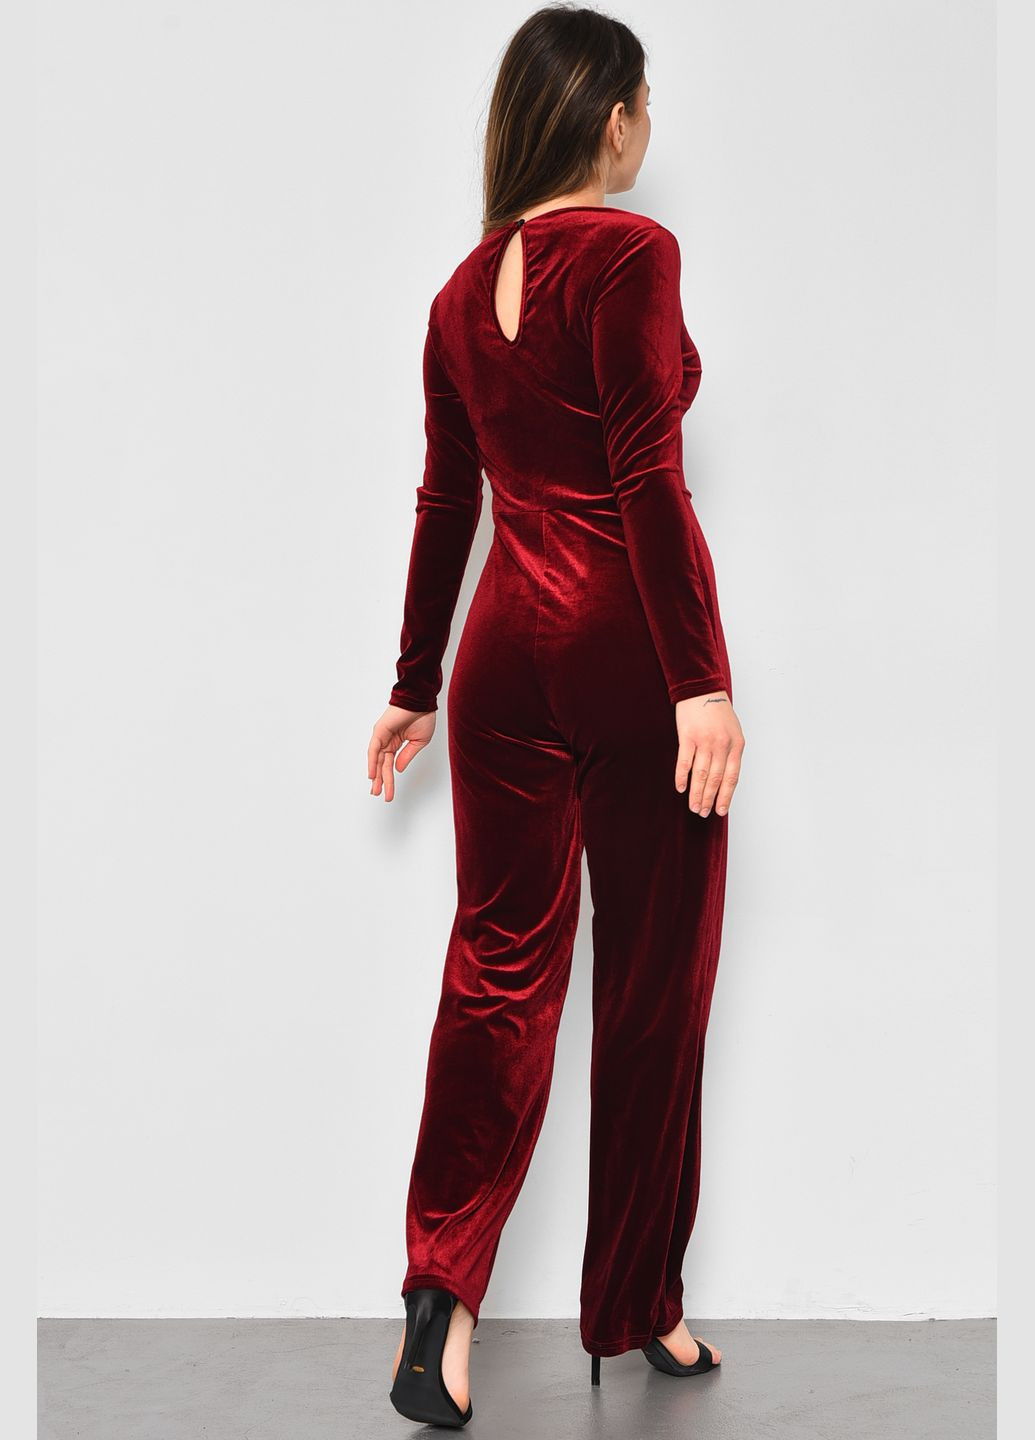 Комбинезон женский бордового цвета Let's Shop комбинезон-брюки однотонный бордовый вечерний велюр